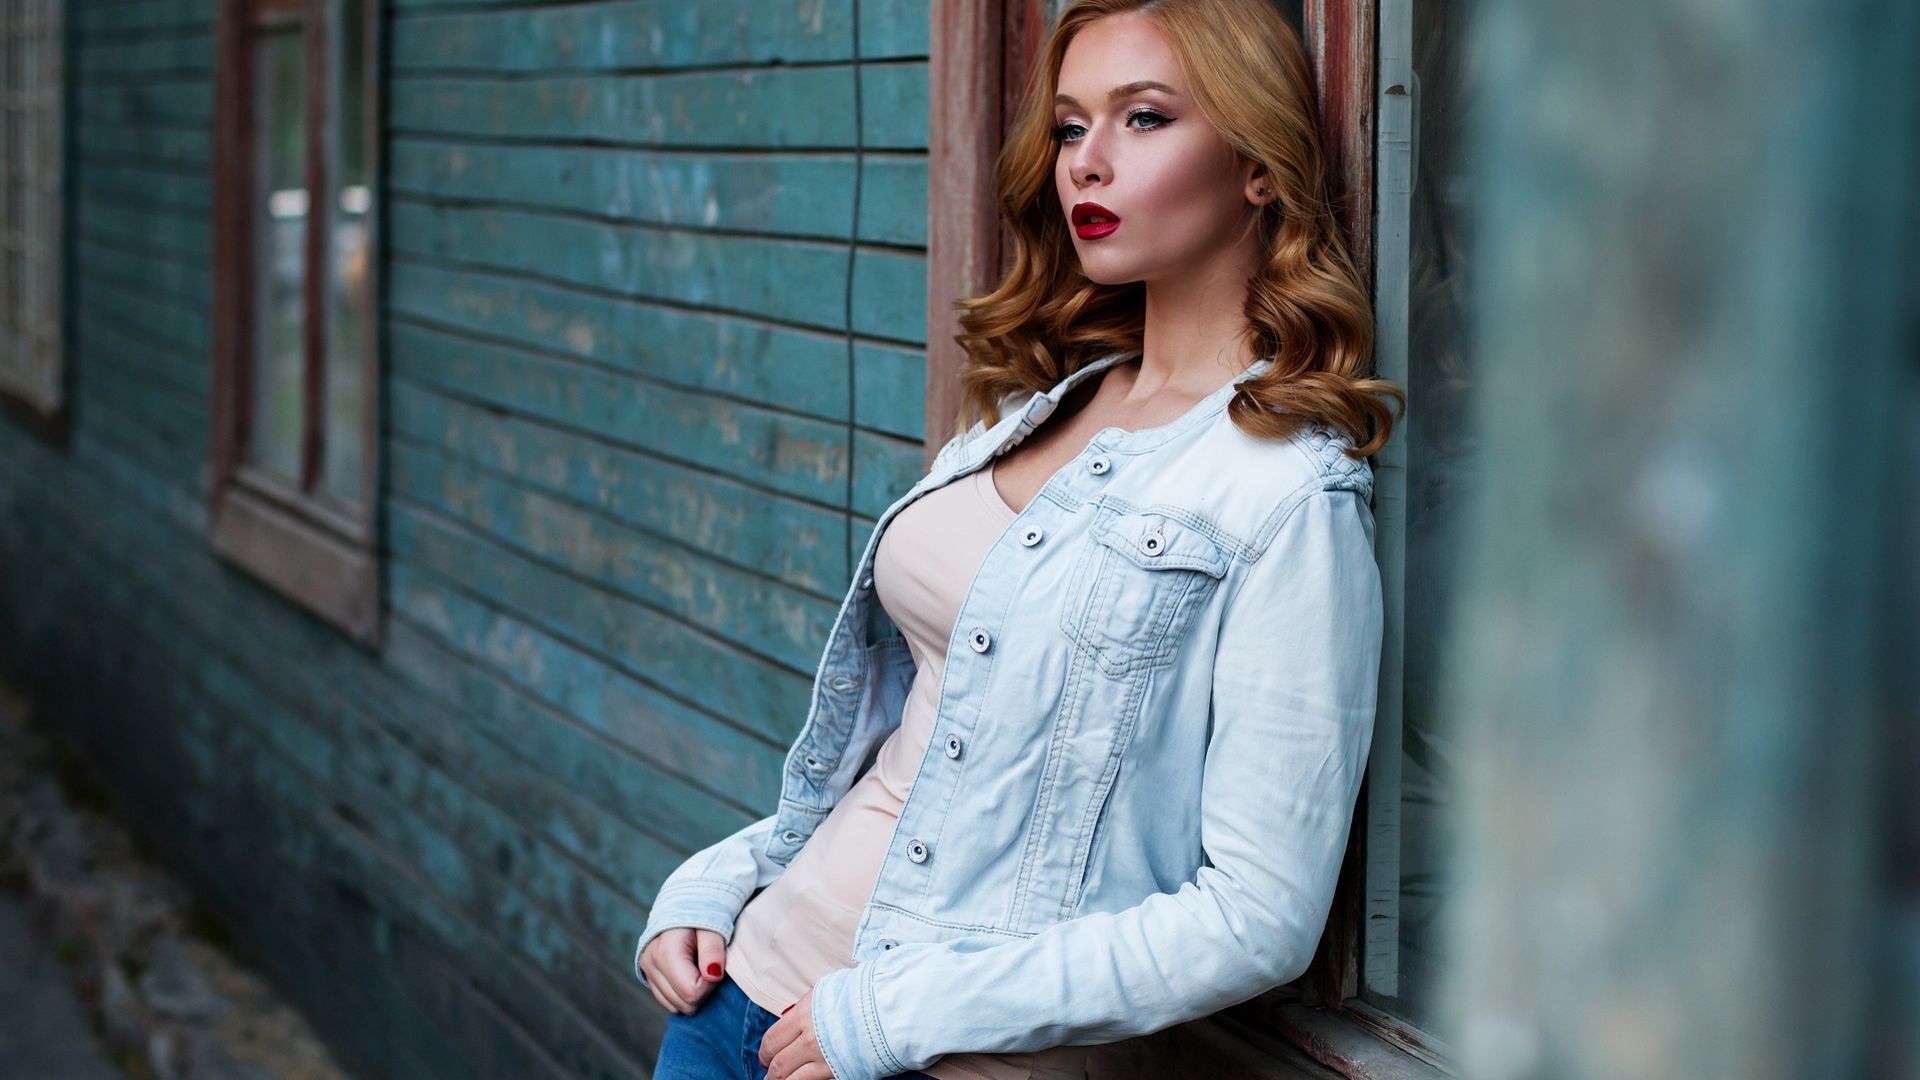 Wallpaper Russian model, fashion model, blue jeans